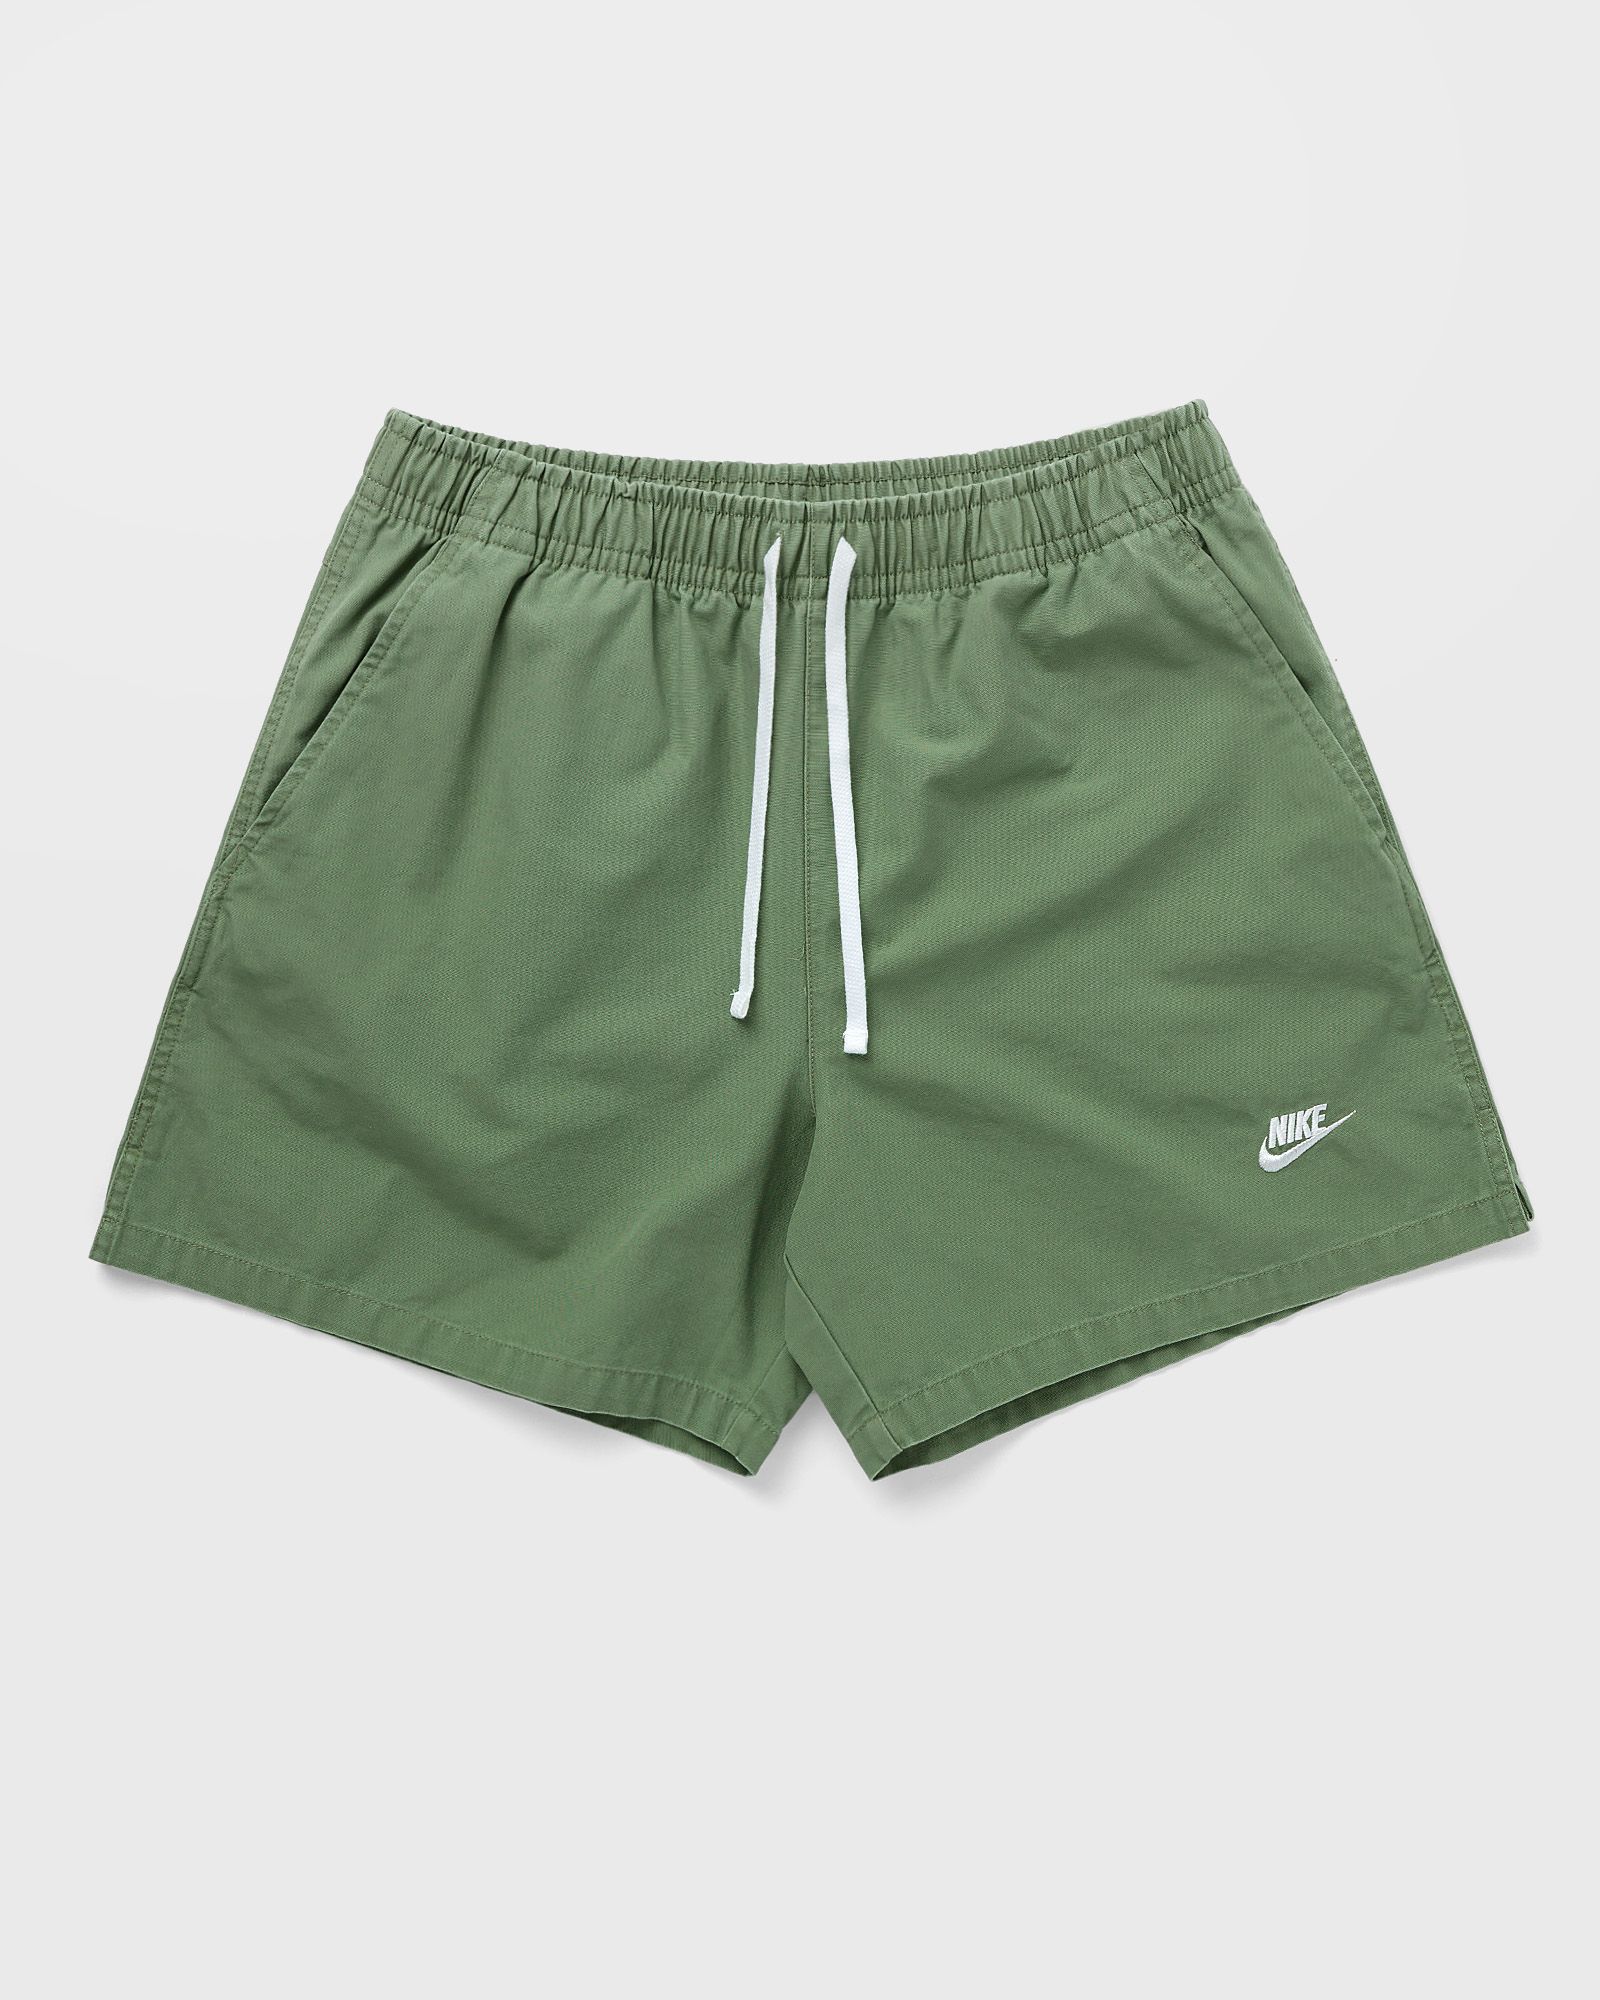 Nike - club fleece+ woven flow shorts men sport & team shorts green in größe:xl